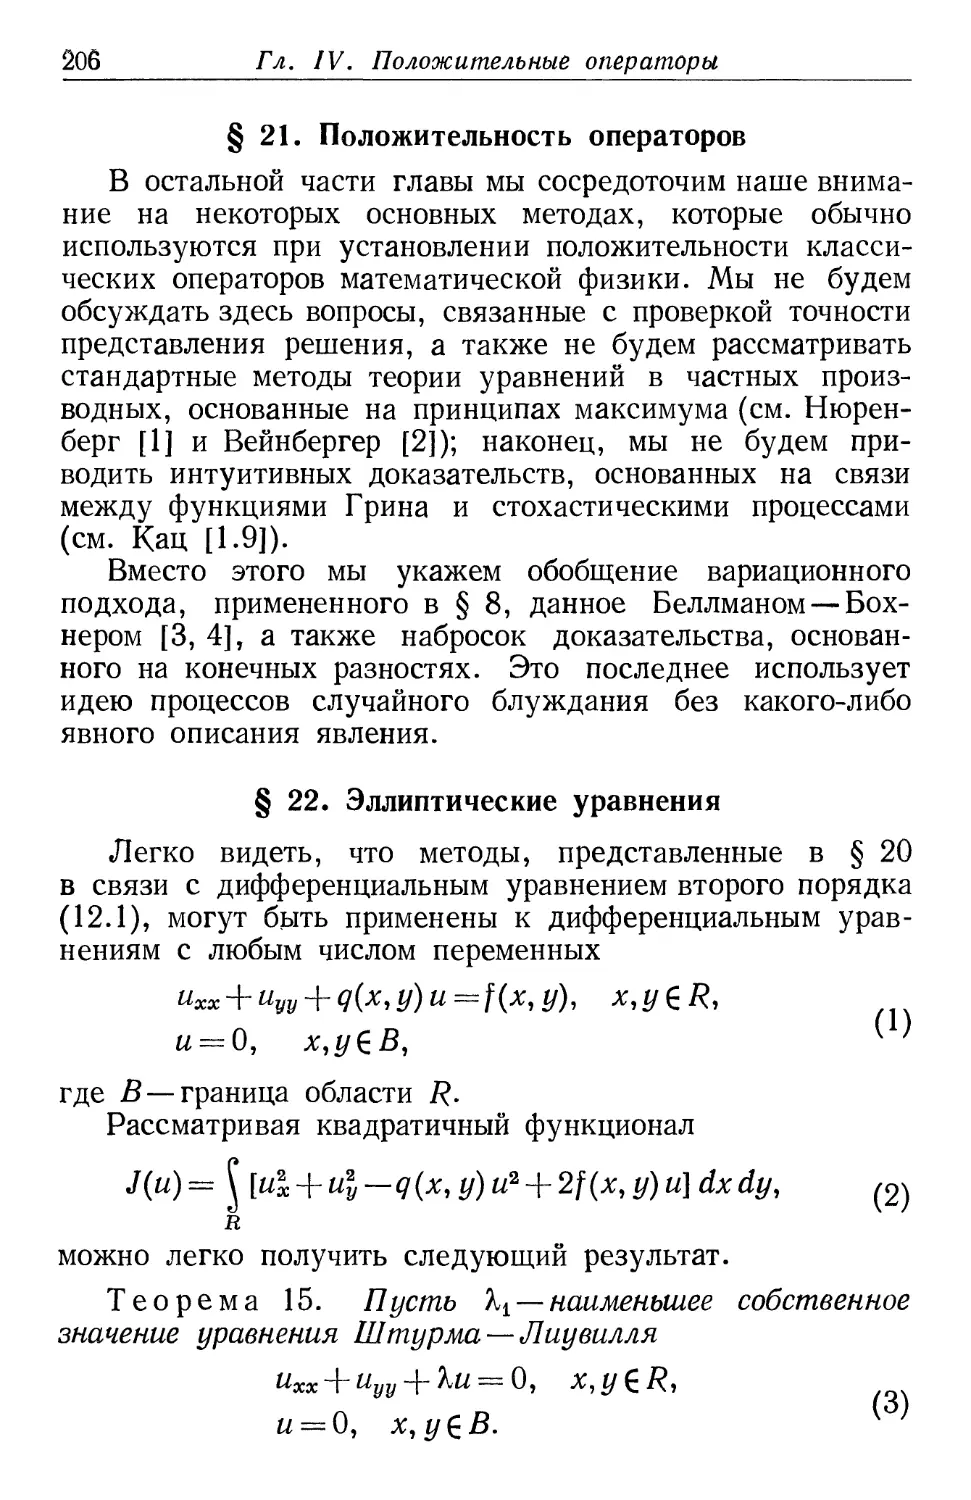 § 21. Положительность операторов
§ 22. Эллиптические уравнения